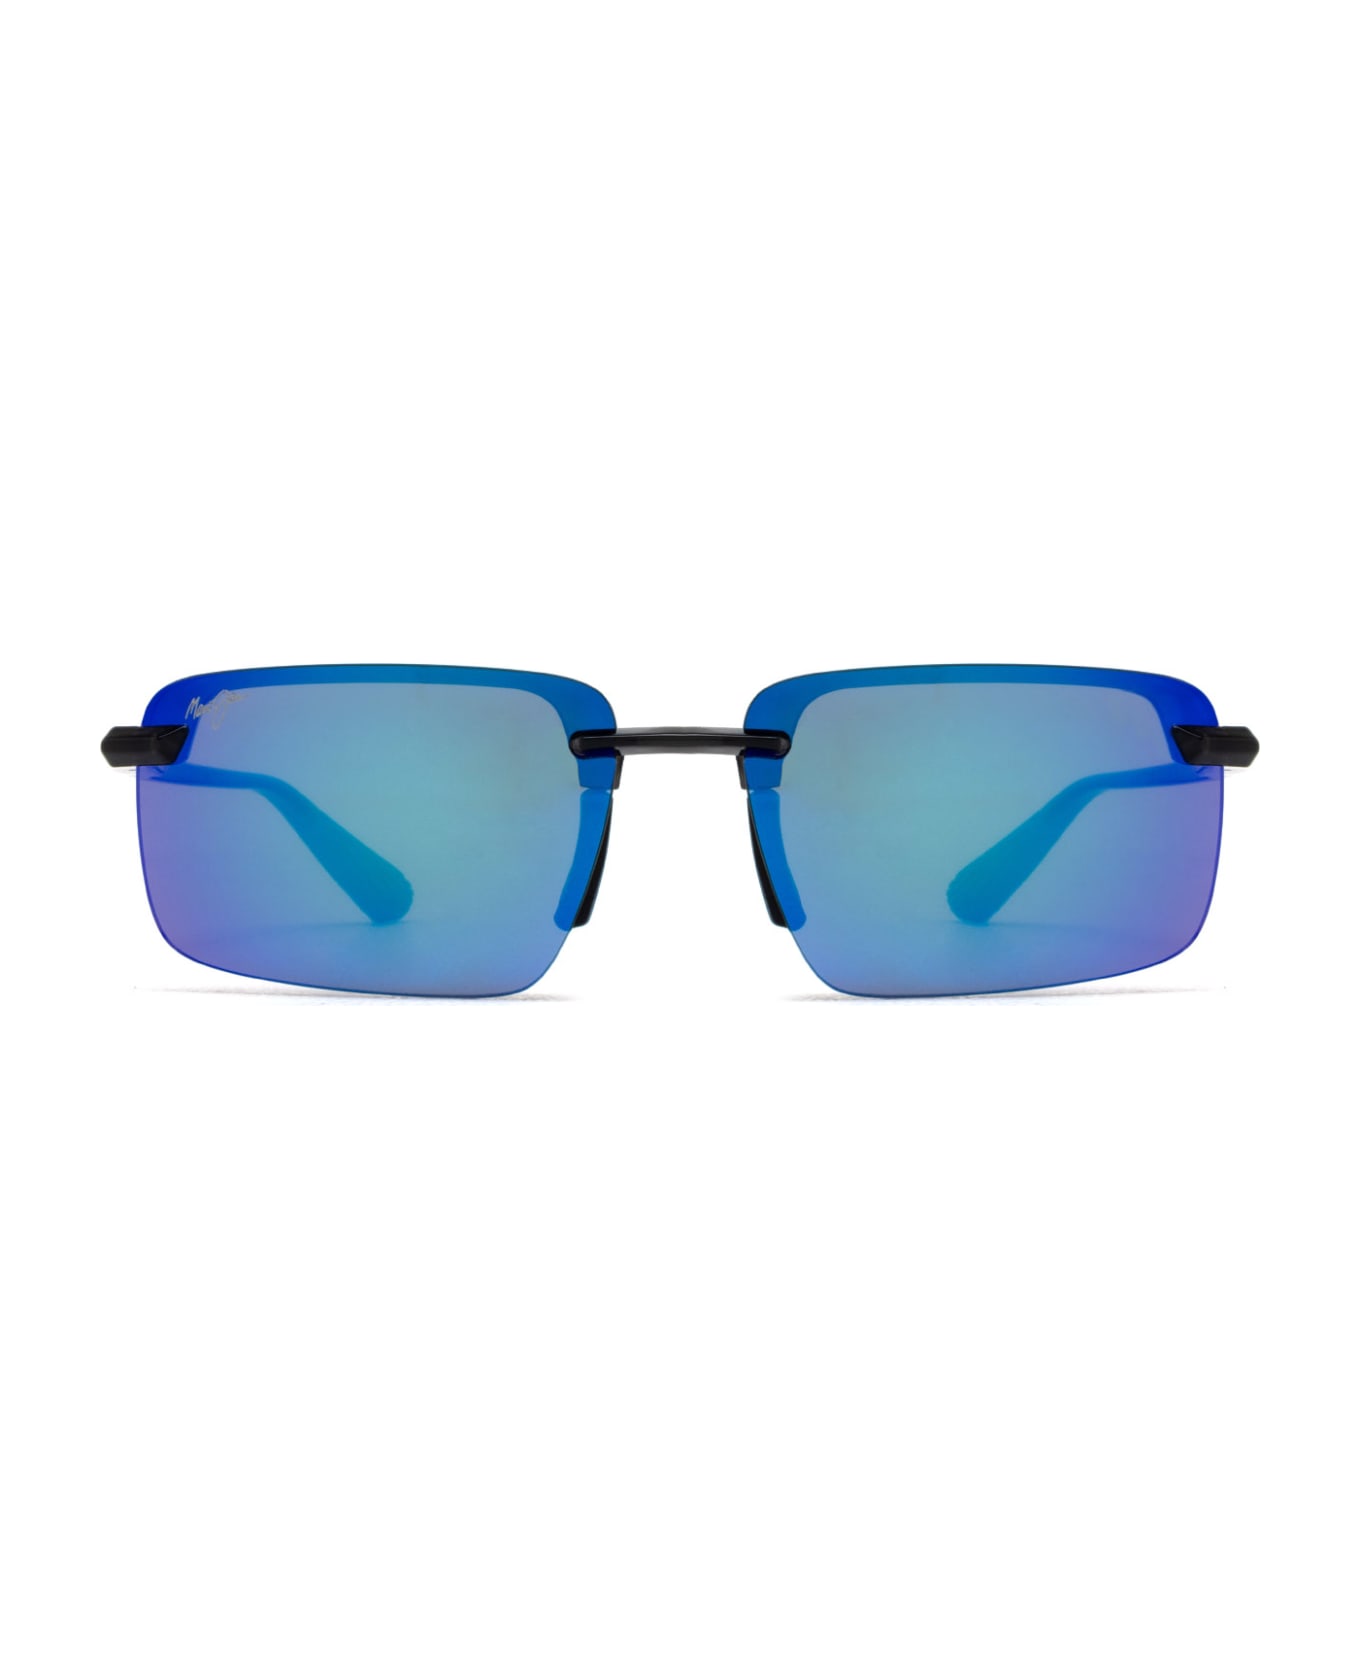 Maui Jim Mj626 Shiny Transparent Dark Grey Sunglasses - Shiny Transparent Dark Grey